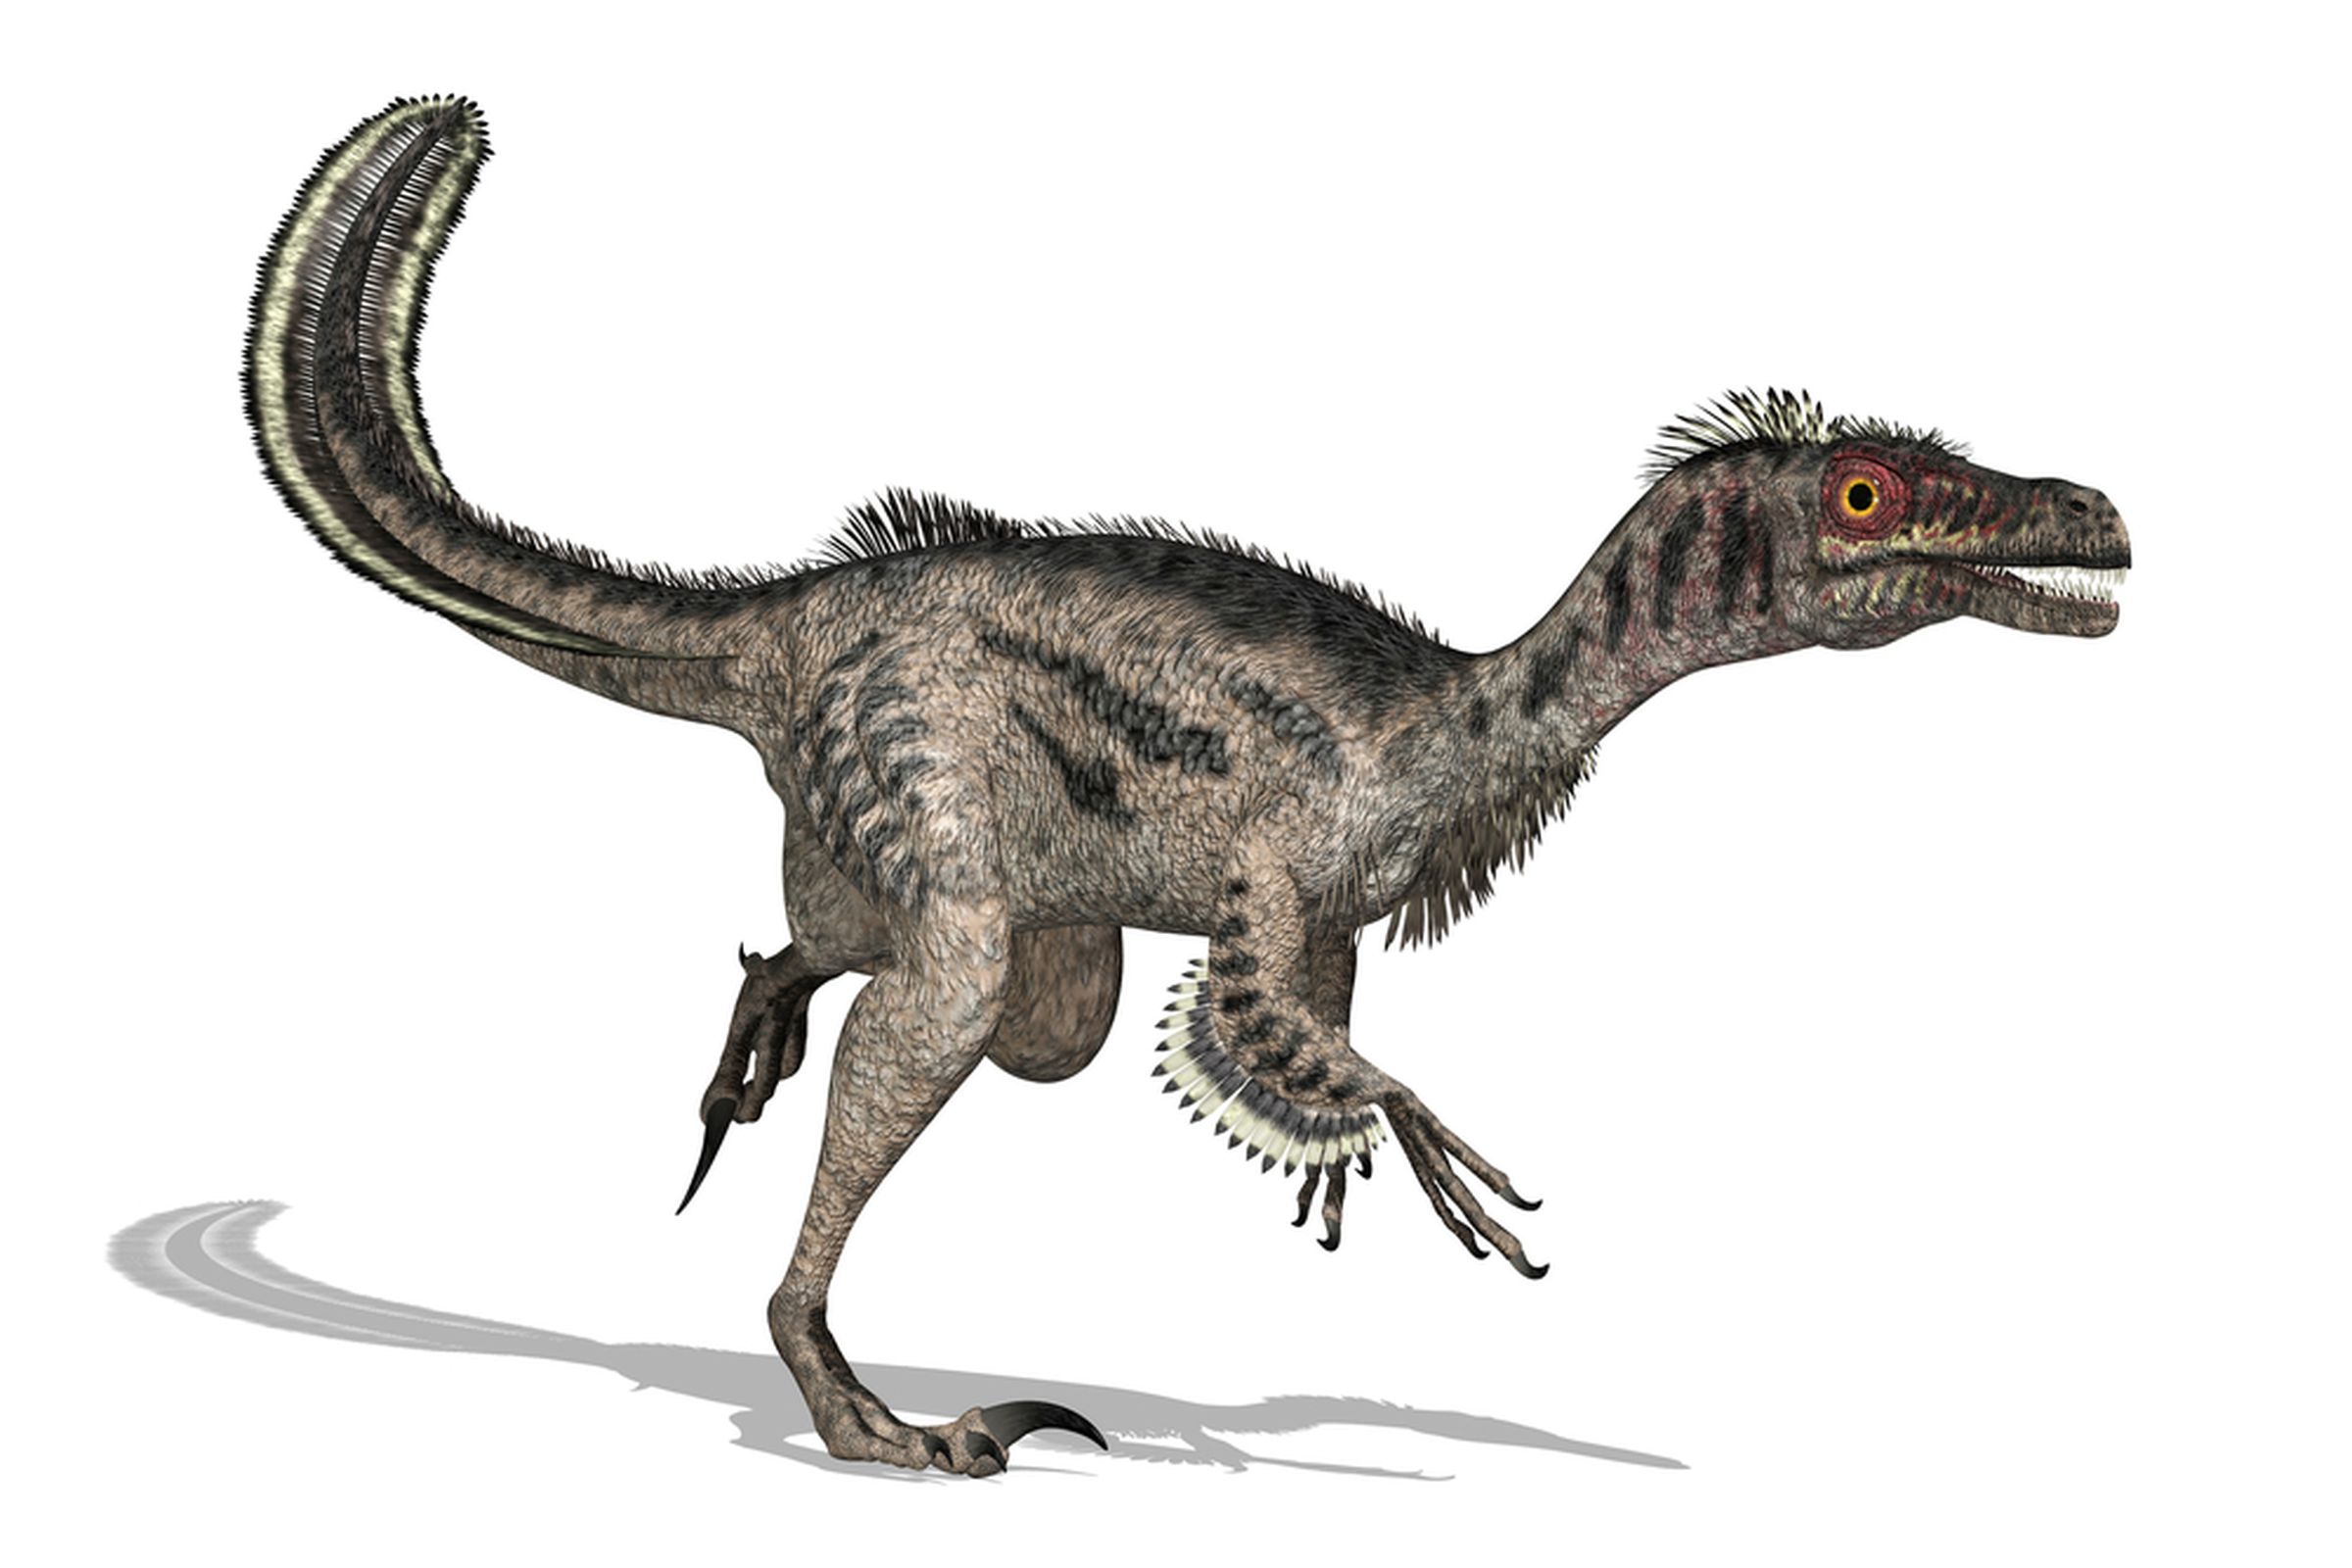 velociraptor dinosaur feathers (Linda Bucklin / Shutterstock.com)